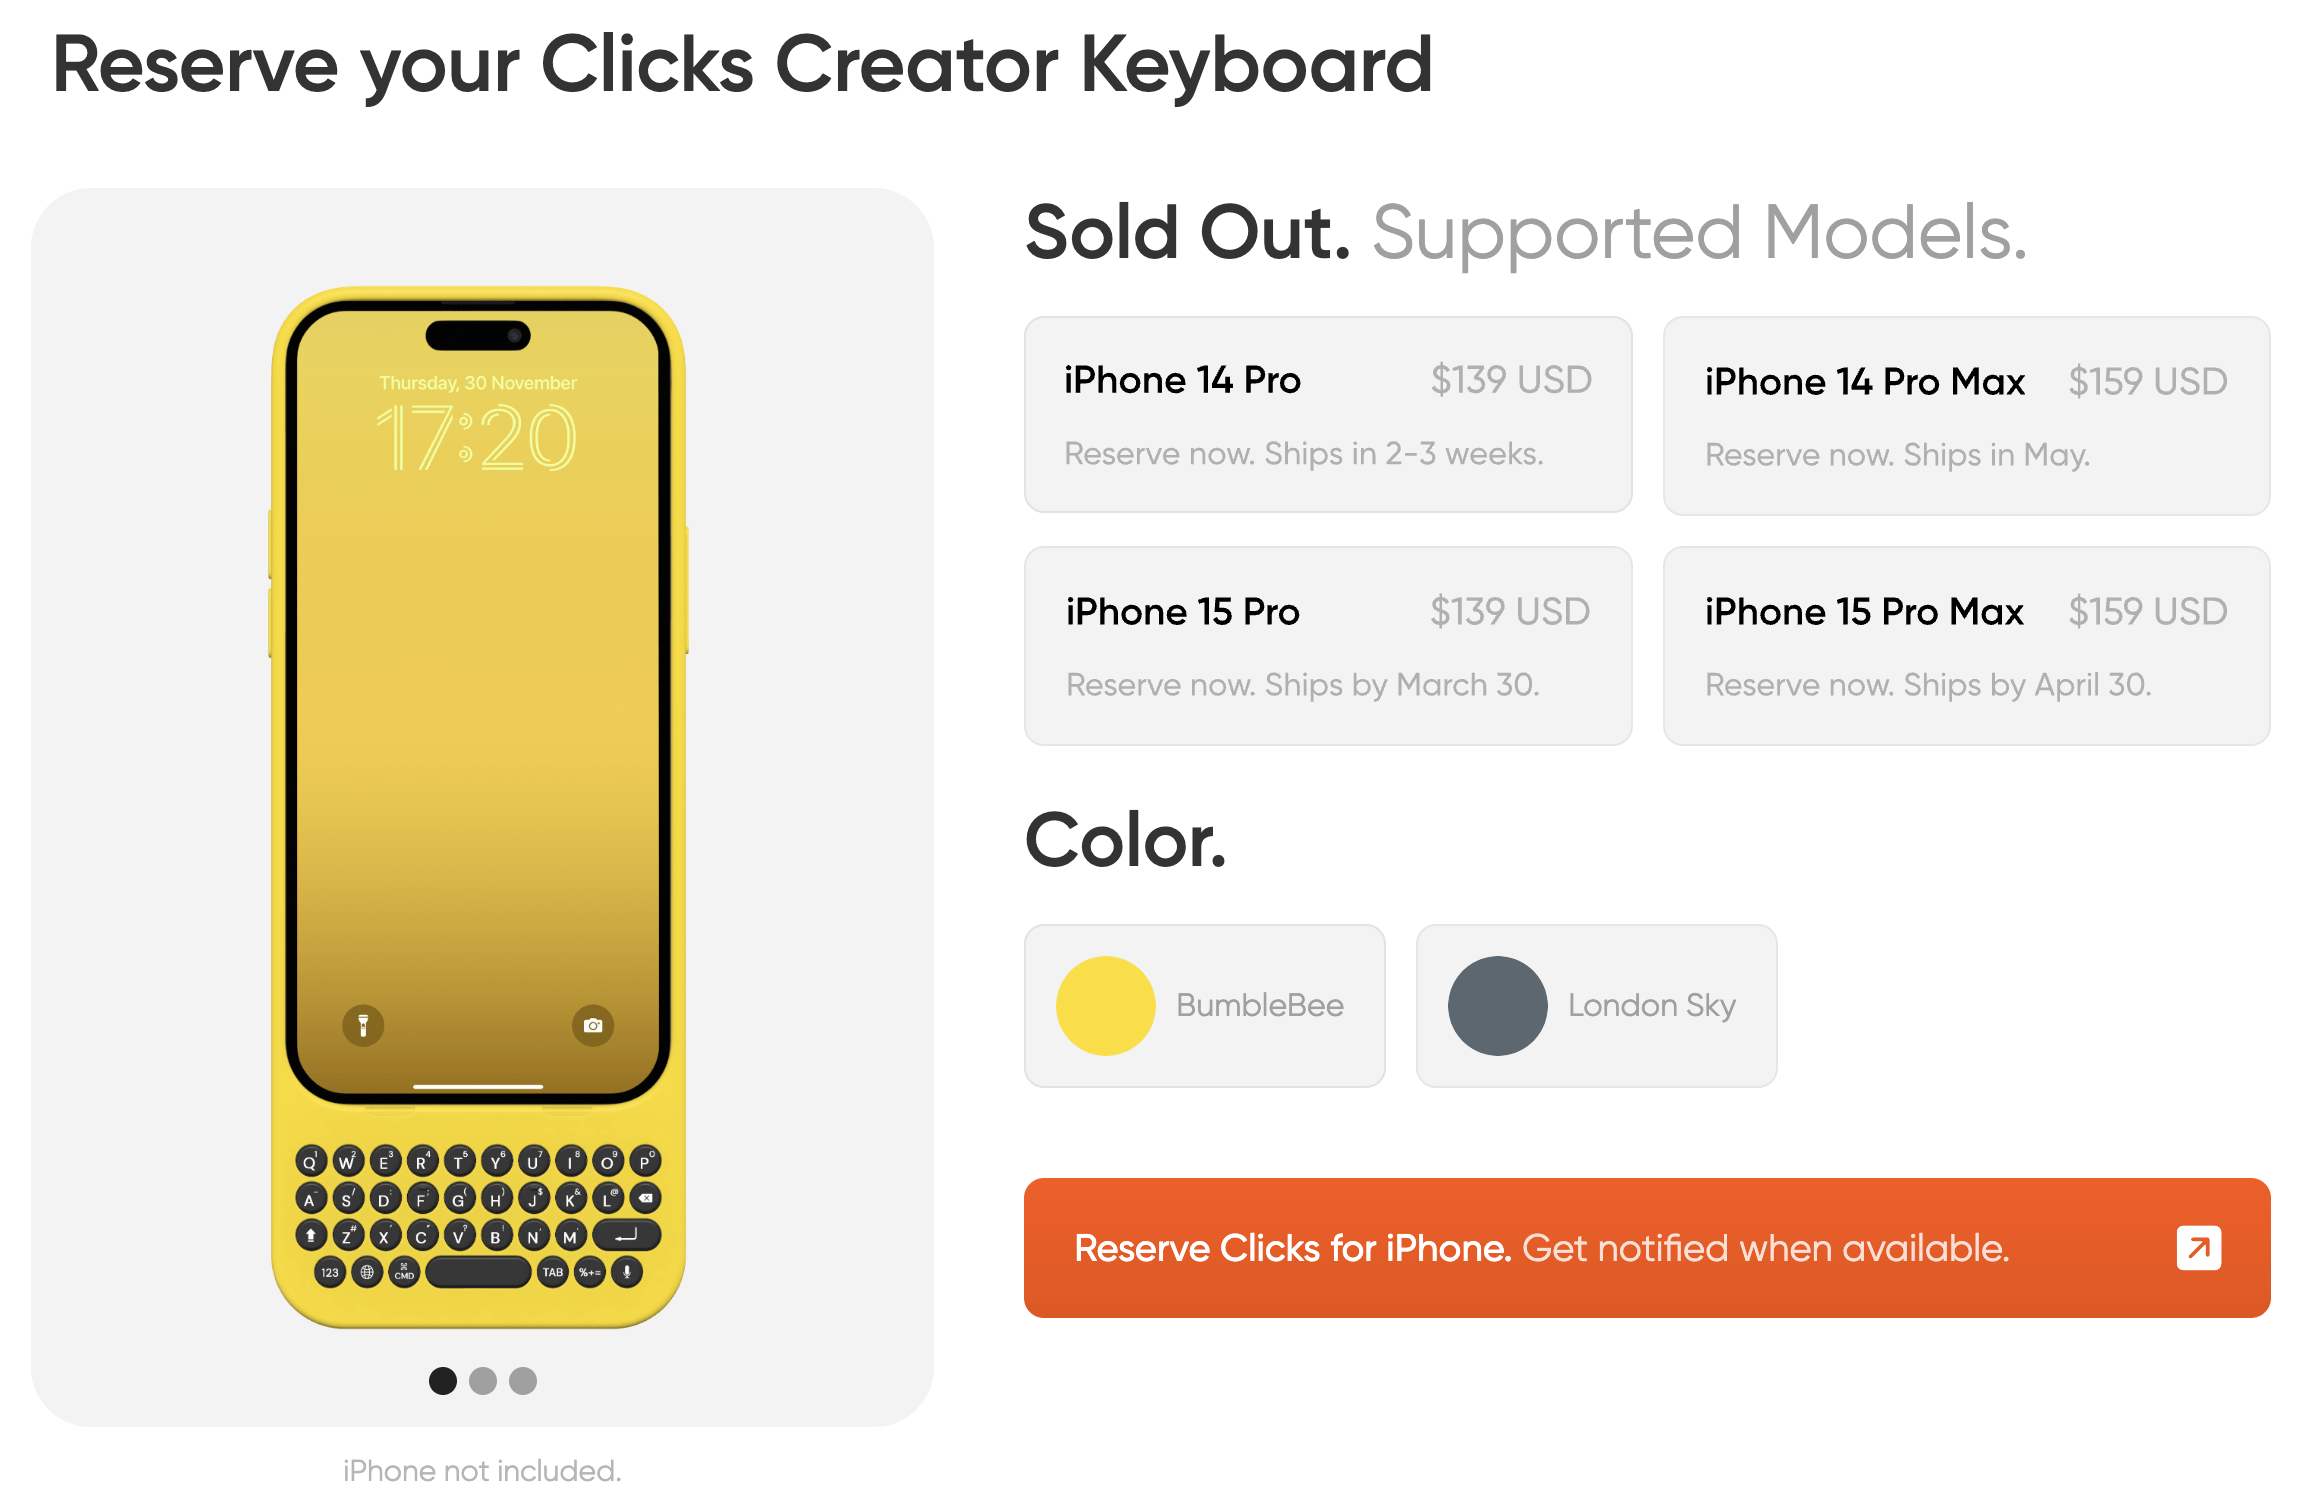 클릭스 크리에이터 키보드(Clicks Creator Keyboard) 가격에 대한 정보